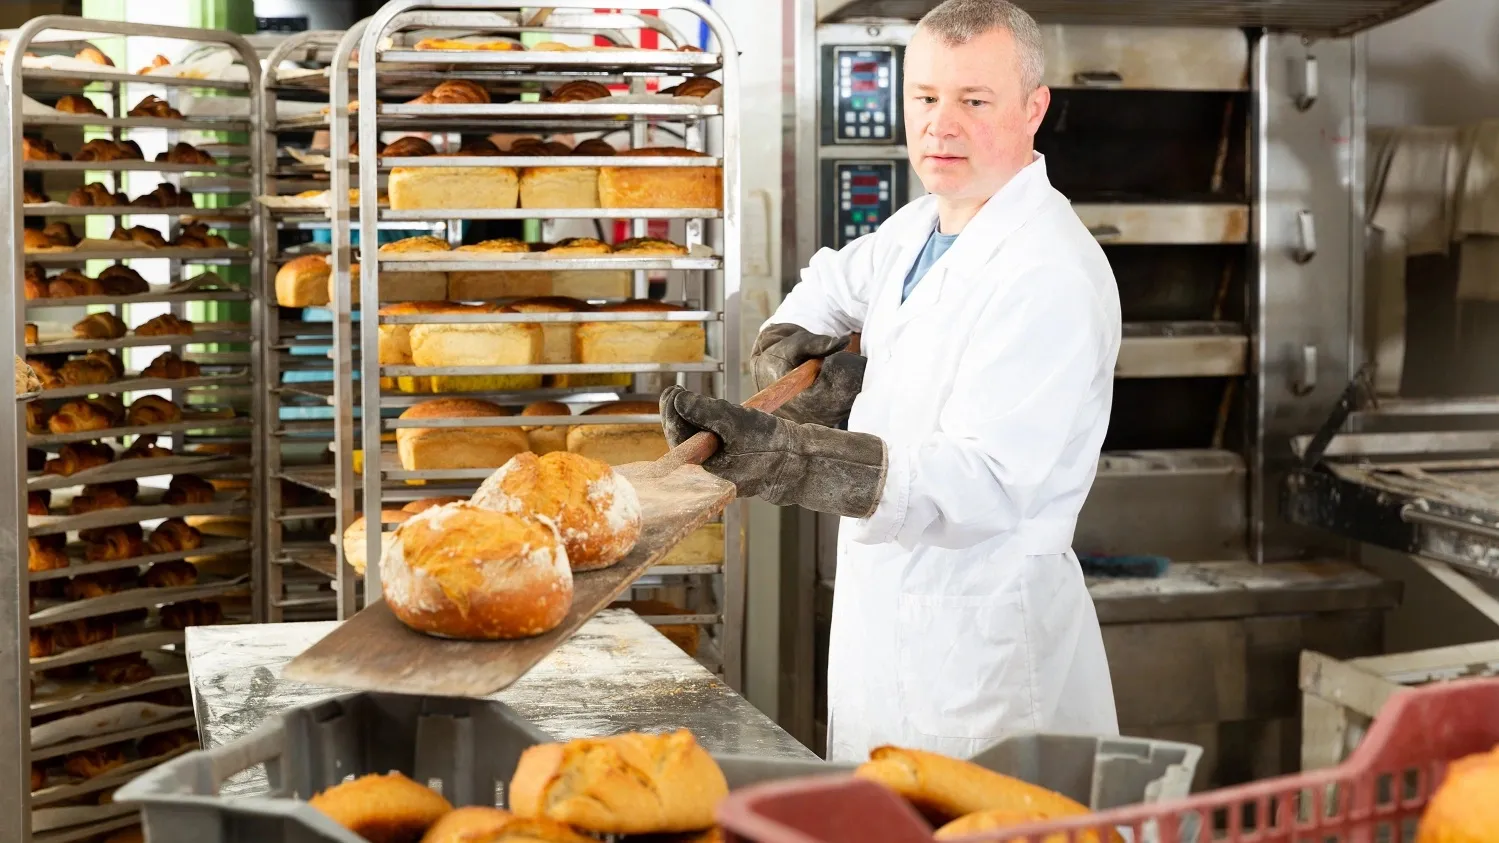 При пекарне могут открыть торговую точку. Фото: BearFotos / shutterstock.com / Fotodom